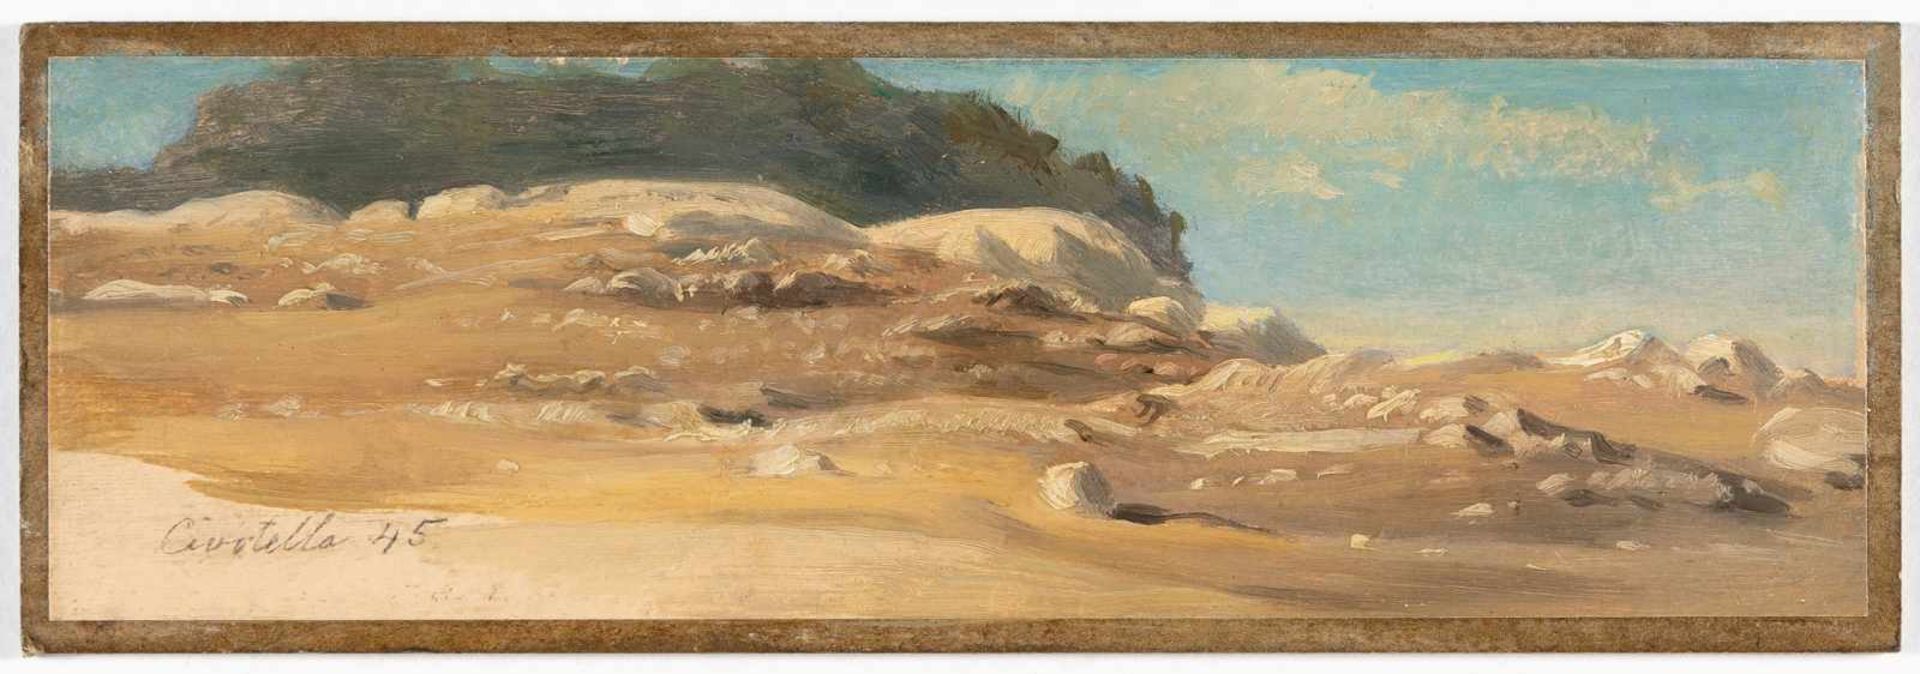 August Albert Zimmermann„Civitella“Öl auf Papier, auf Karton aufgezogen. (18)45. 7,2 x 23 cm. - Bild 2 aus 3